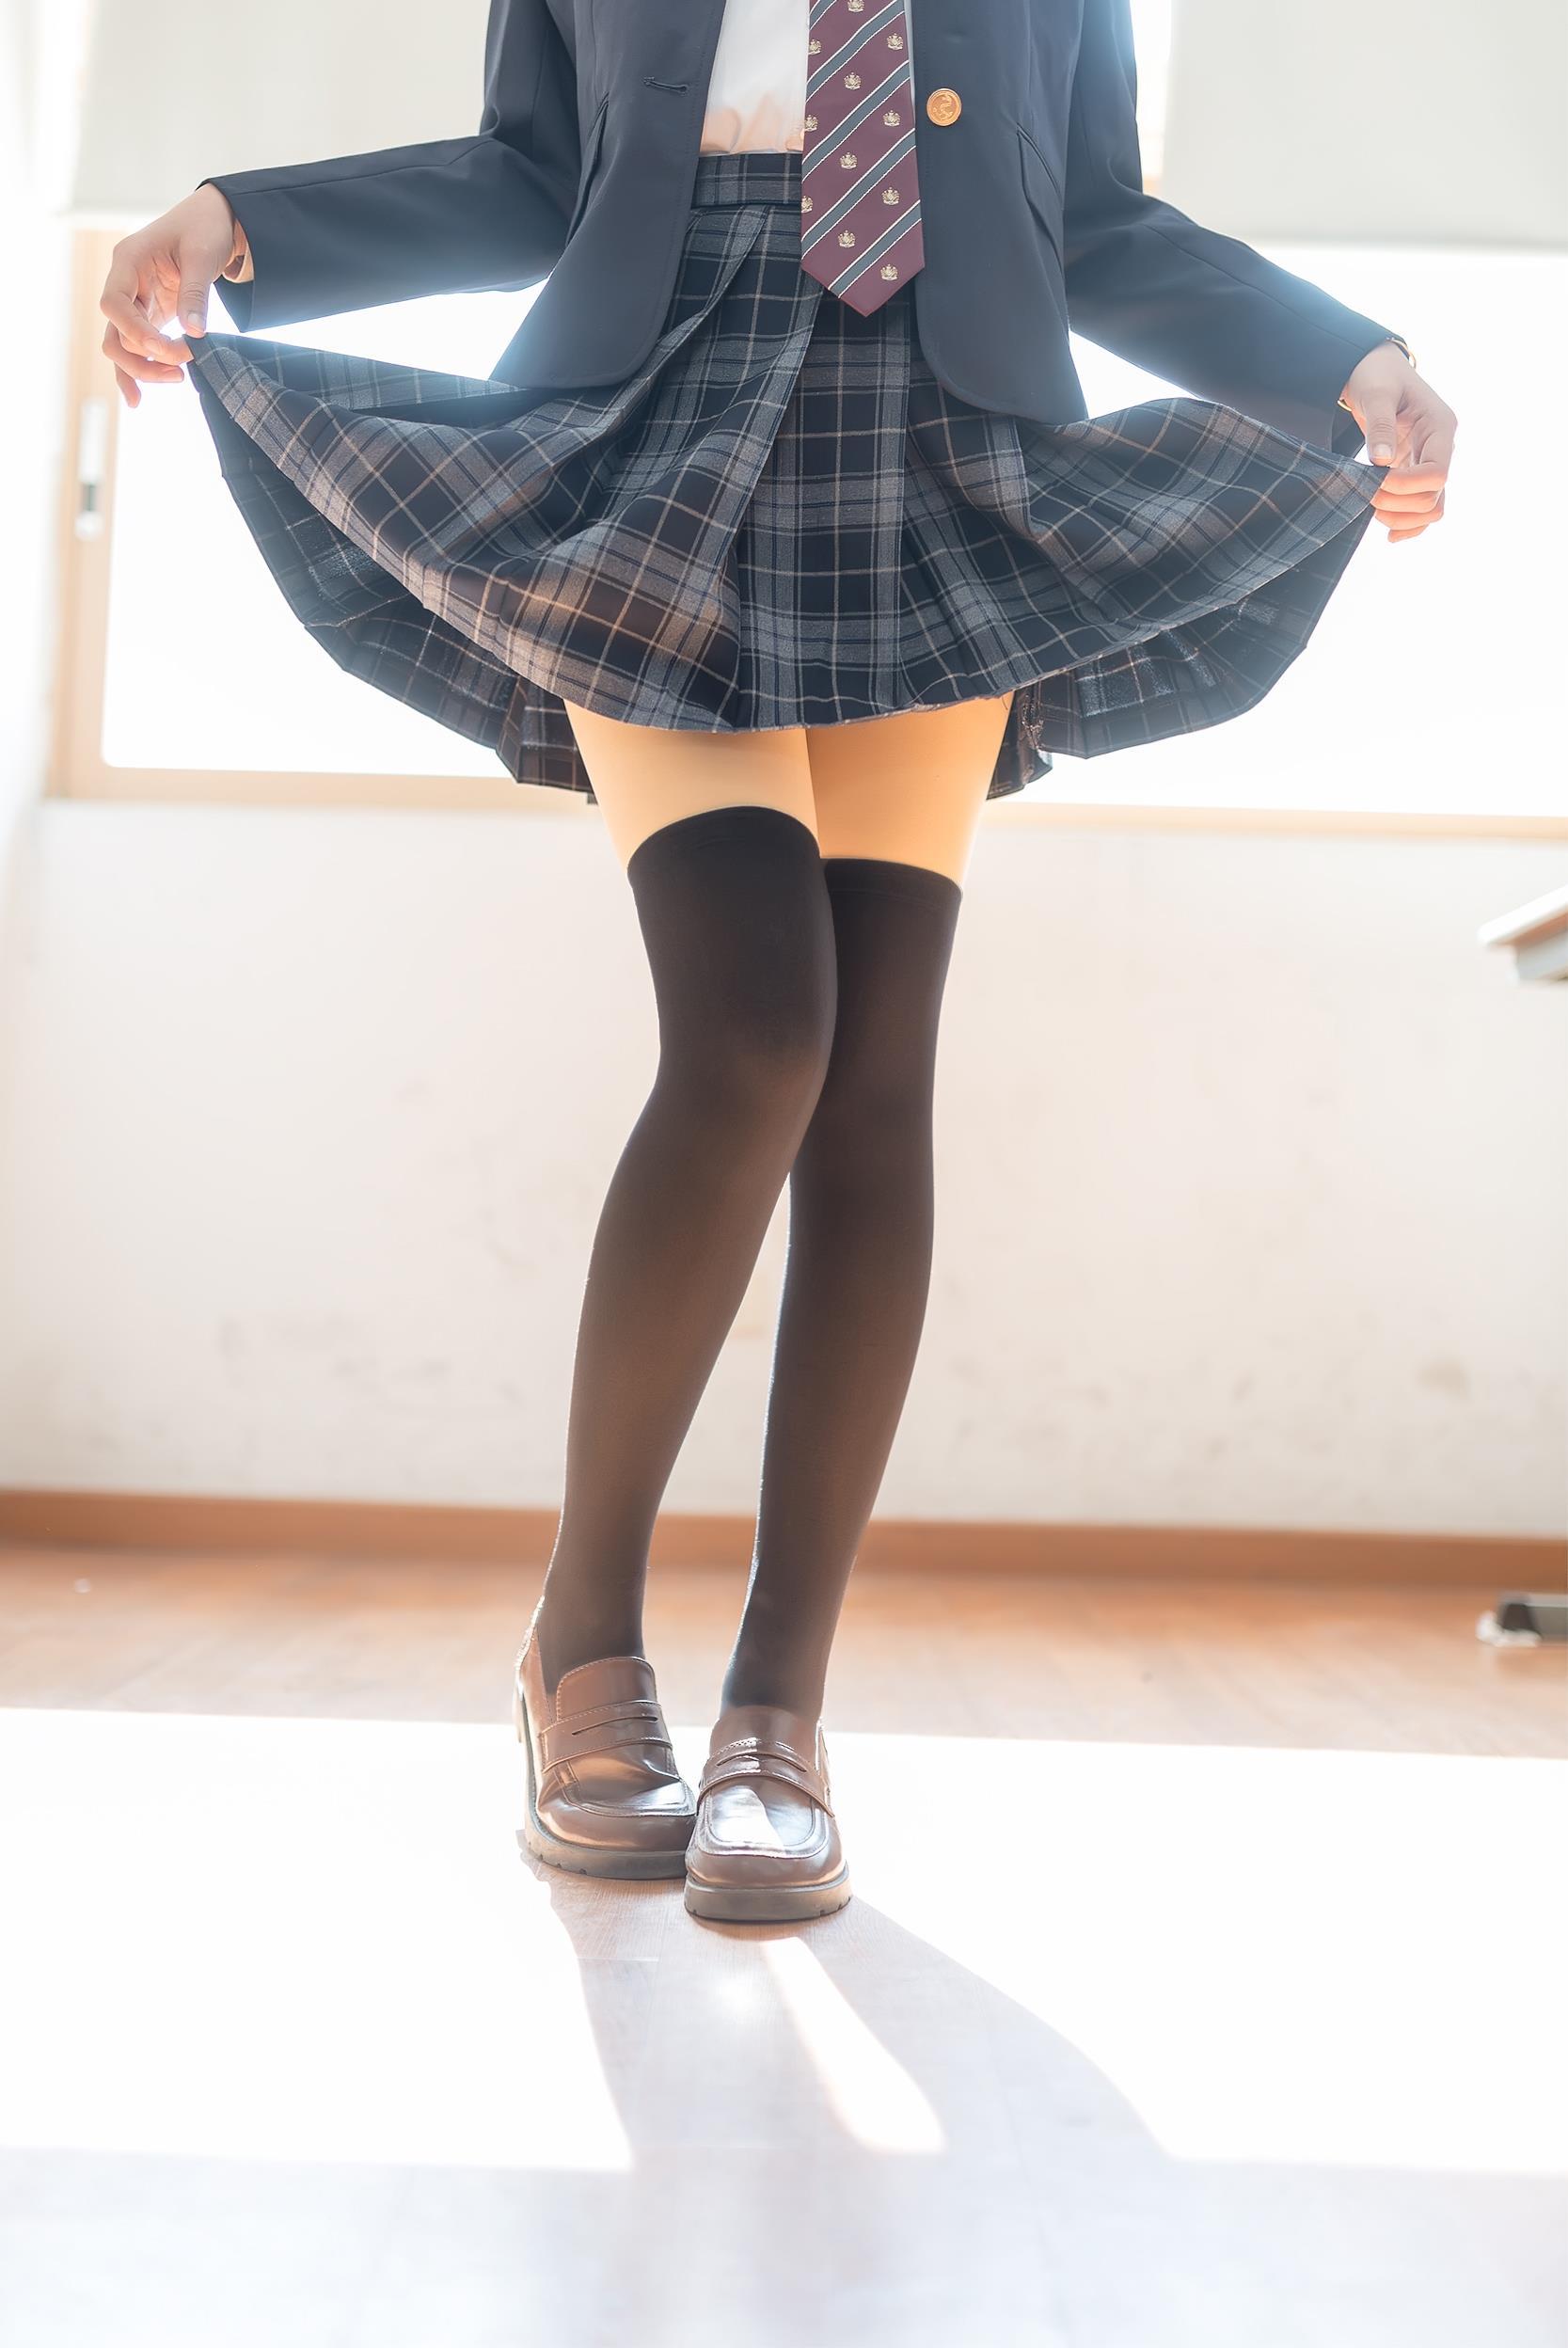 [风之领域]NO.016 性感小萝莉 黑色高中女生制服与格子短裙加黑色丝袜美腿玉足私房写真集,